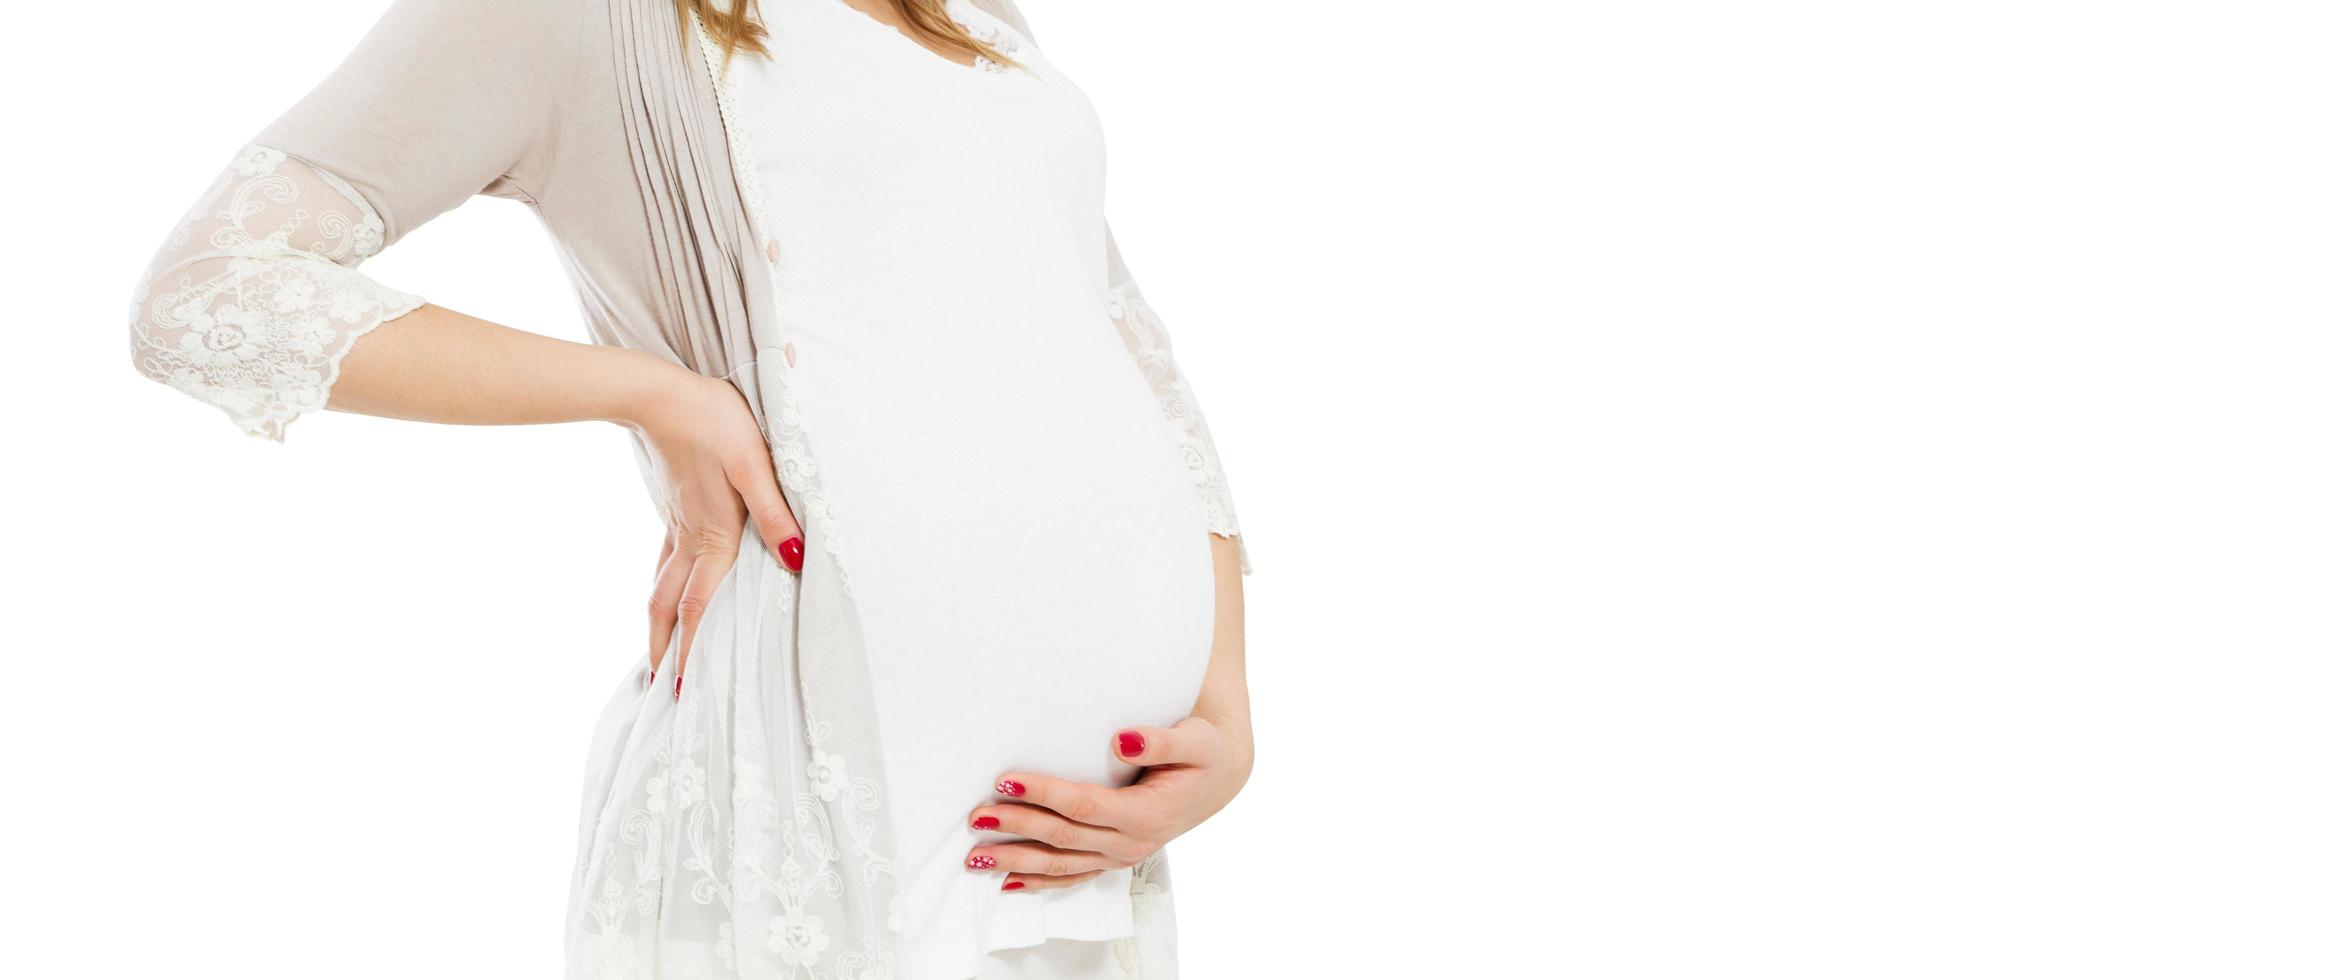 ganska ung gravid kvinna står på vit bakgrund och rör vid den gravida magen - beskuren bild. foto